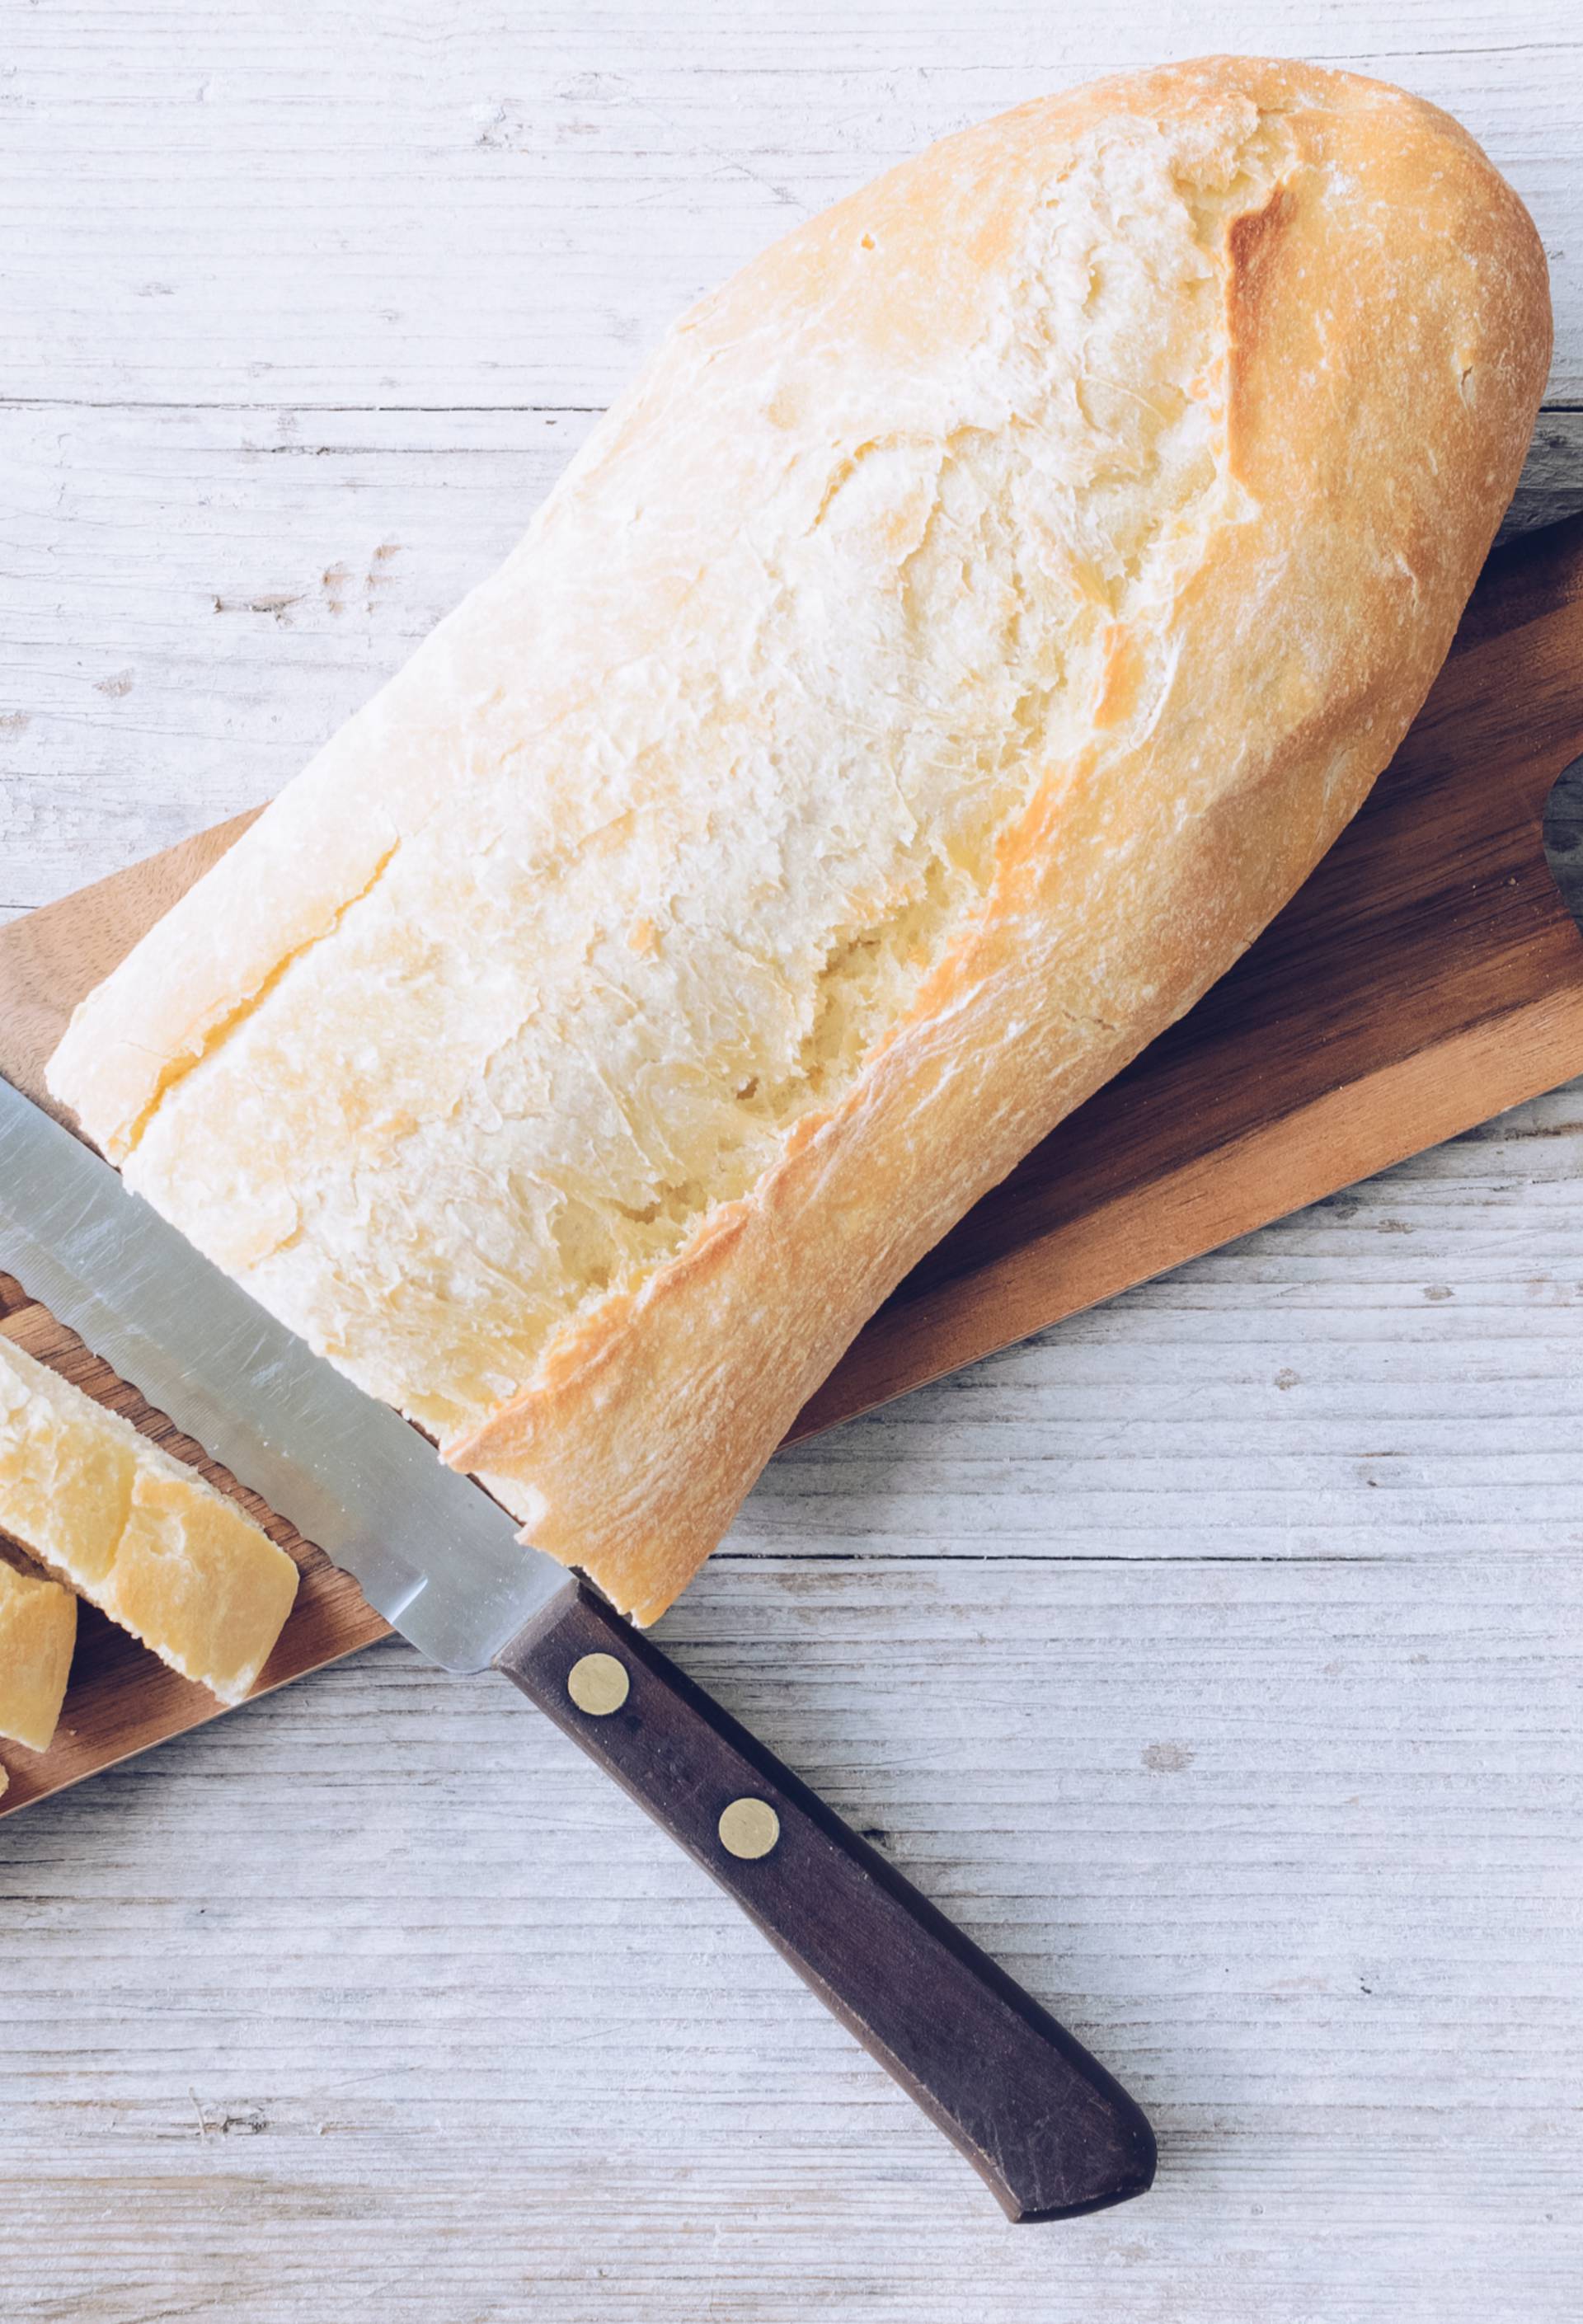 Kruh naš svagdašnji: Svježe i toplo, a smrznut u inozemstvu